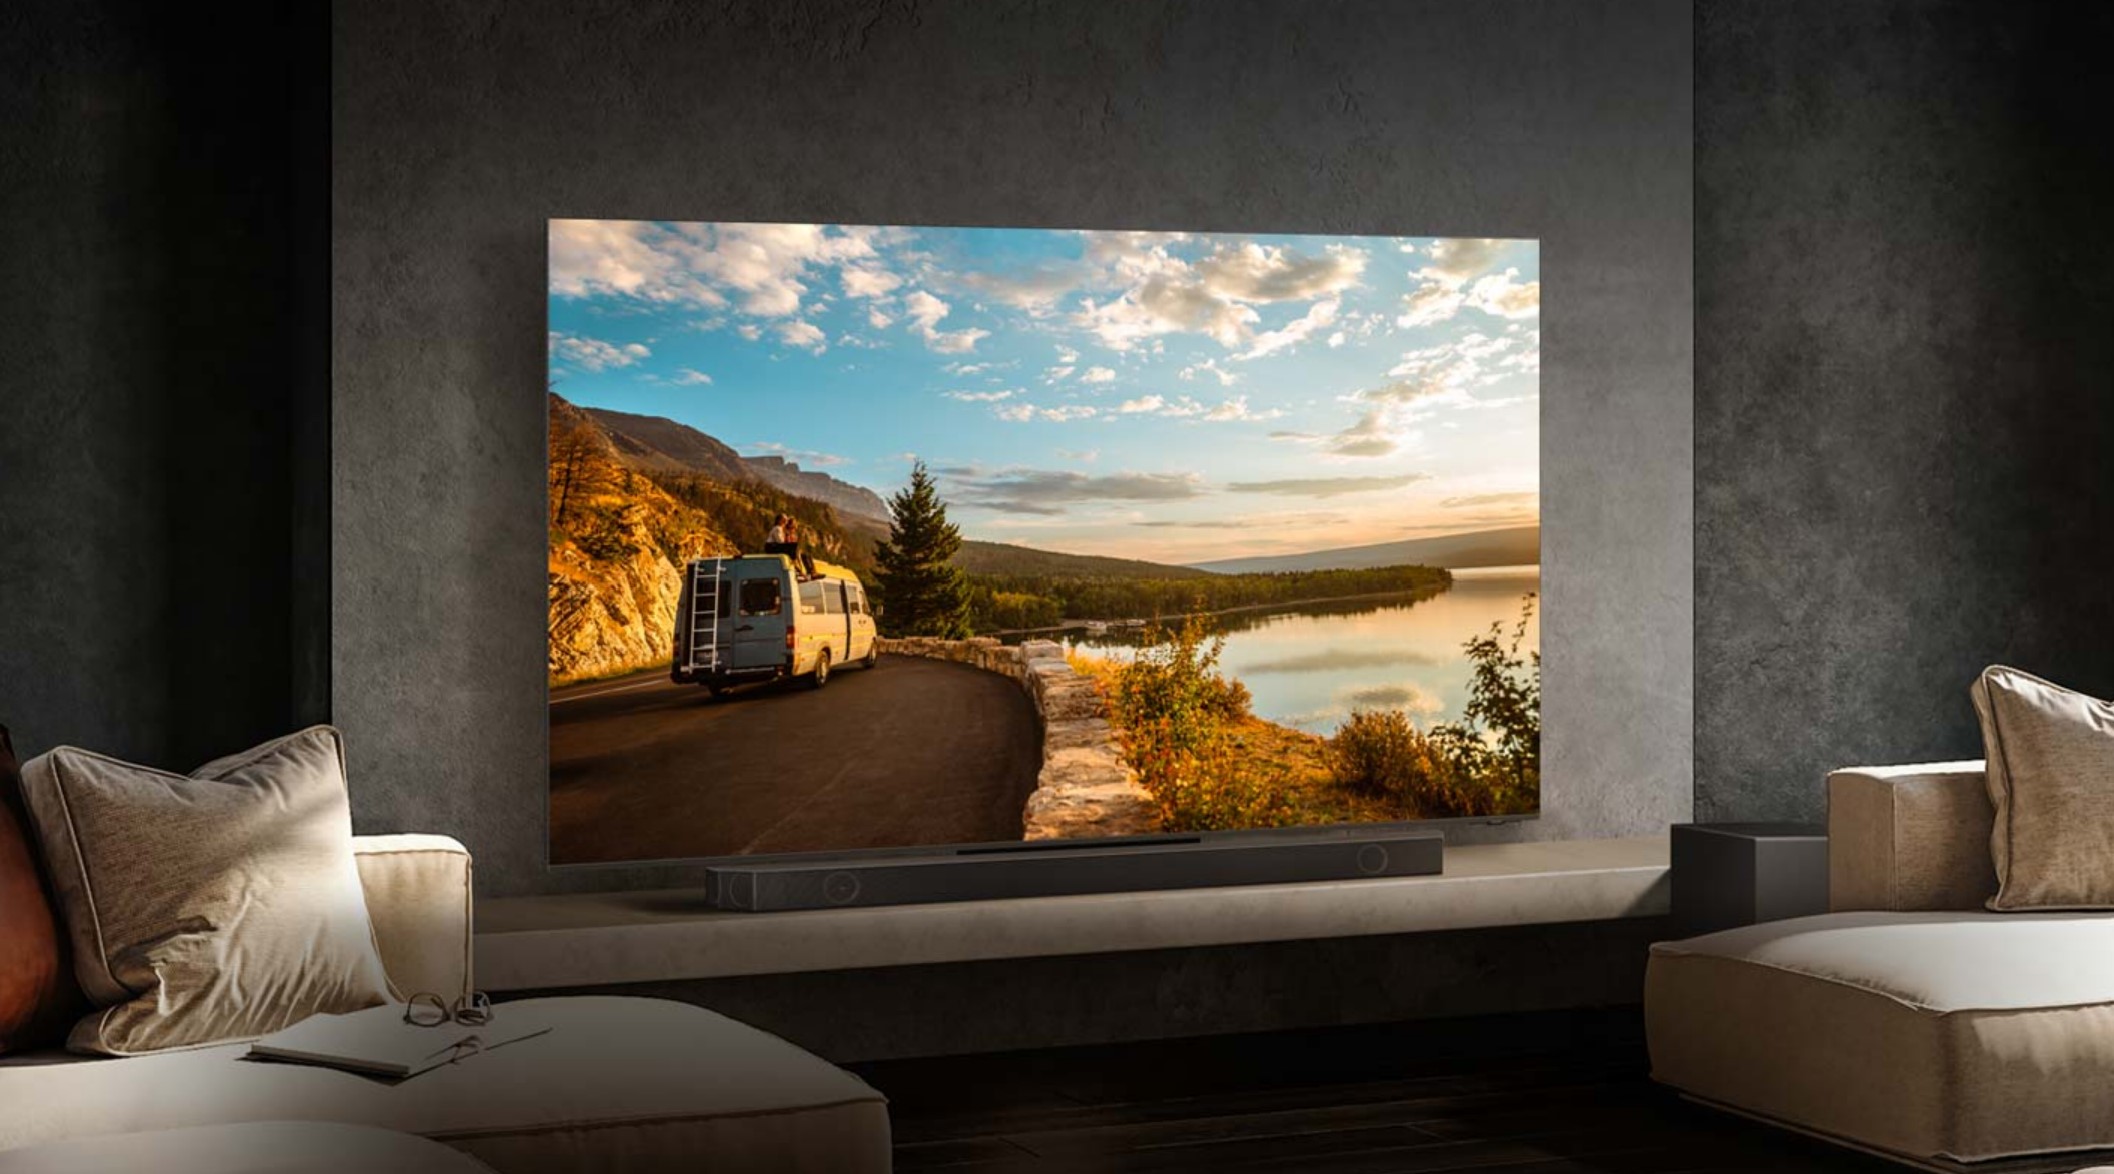 LG unveils W7 'Wallpaper OLED' TV - FlatpanelsHD